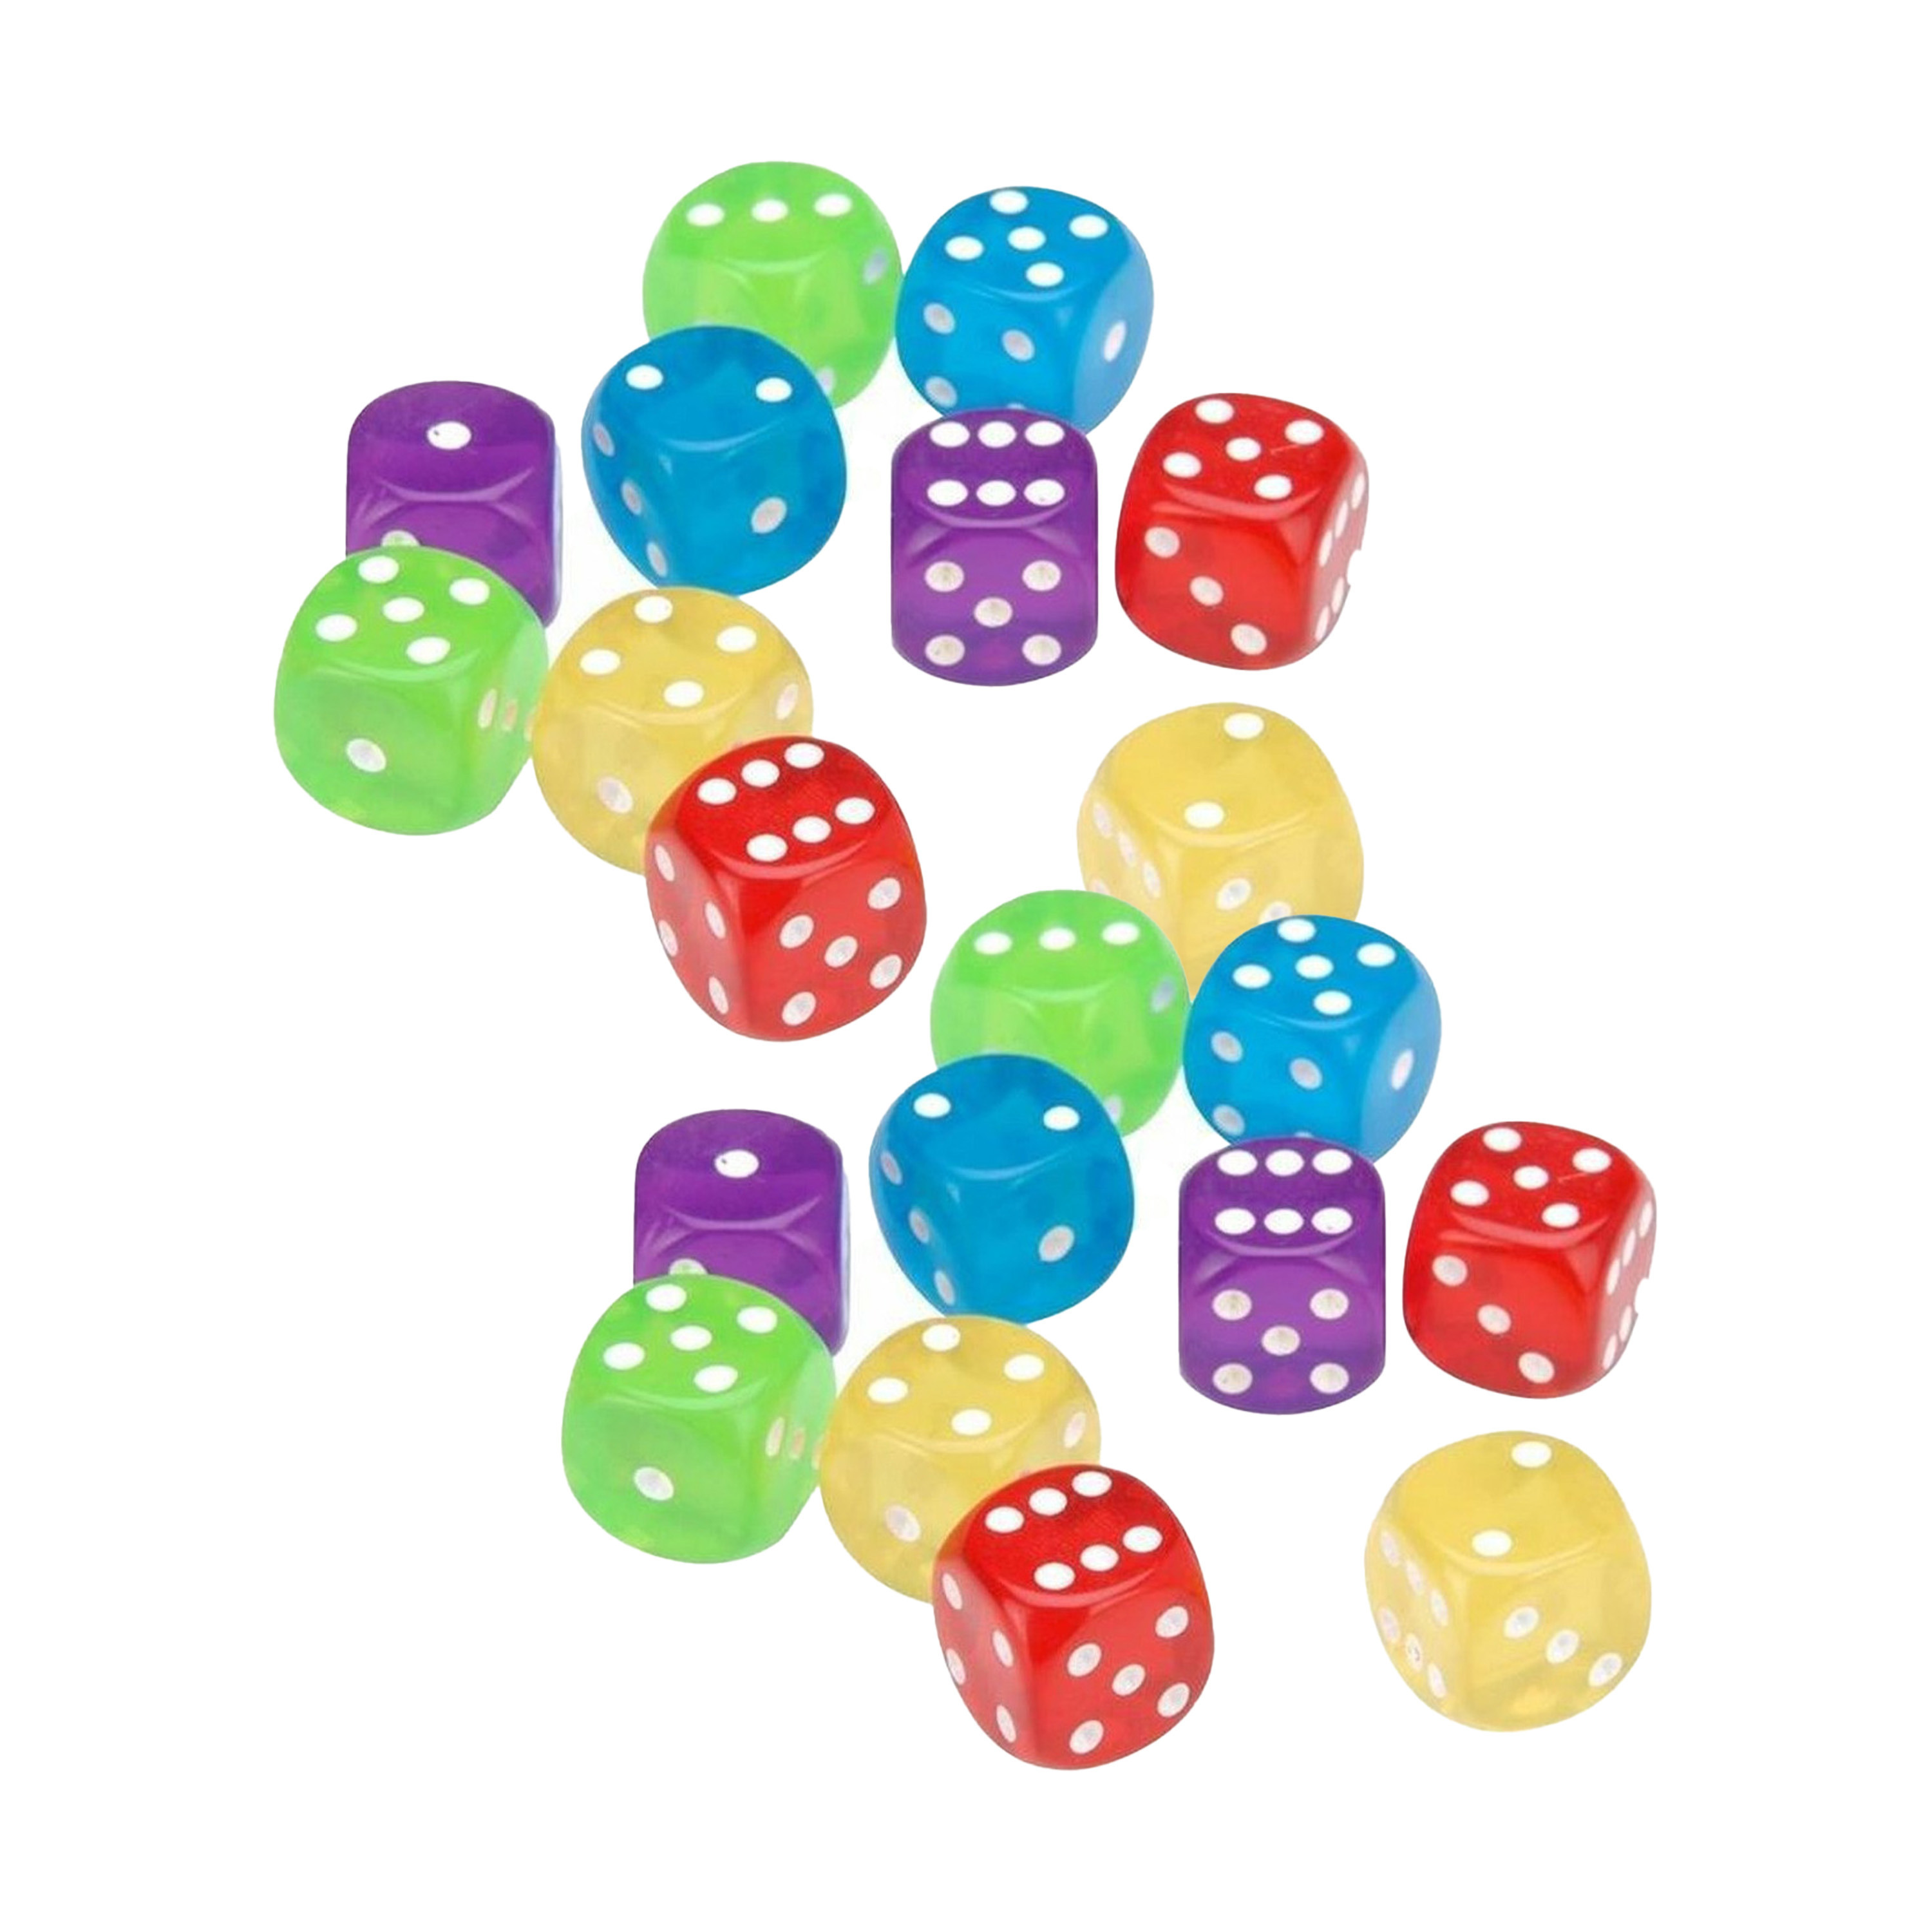 Dobbelstenen 20x kleurenmix kunststof bordspellen dobbel spellen